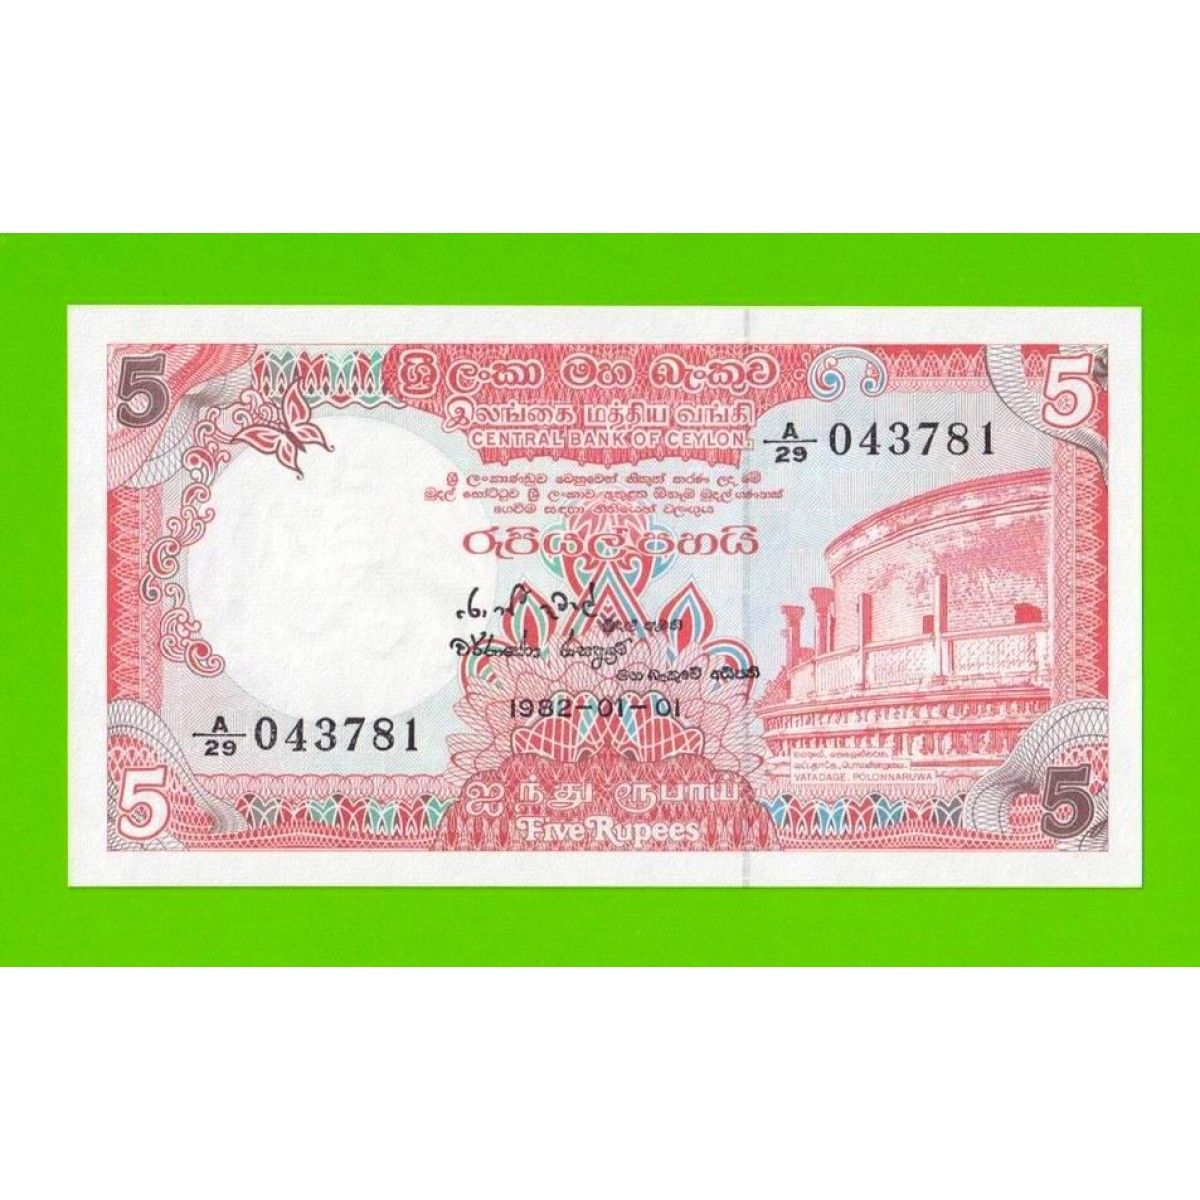 Банкноты Цейлона. Шри-Ланкийская рупия. Боны.цена.Цейлон. Боны.цена.Цейлон.20.